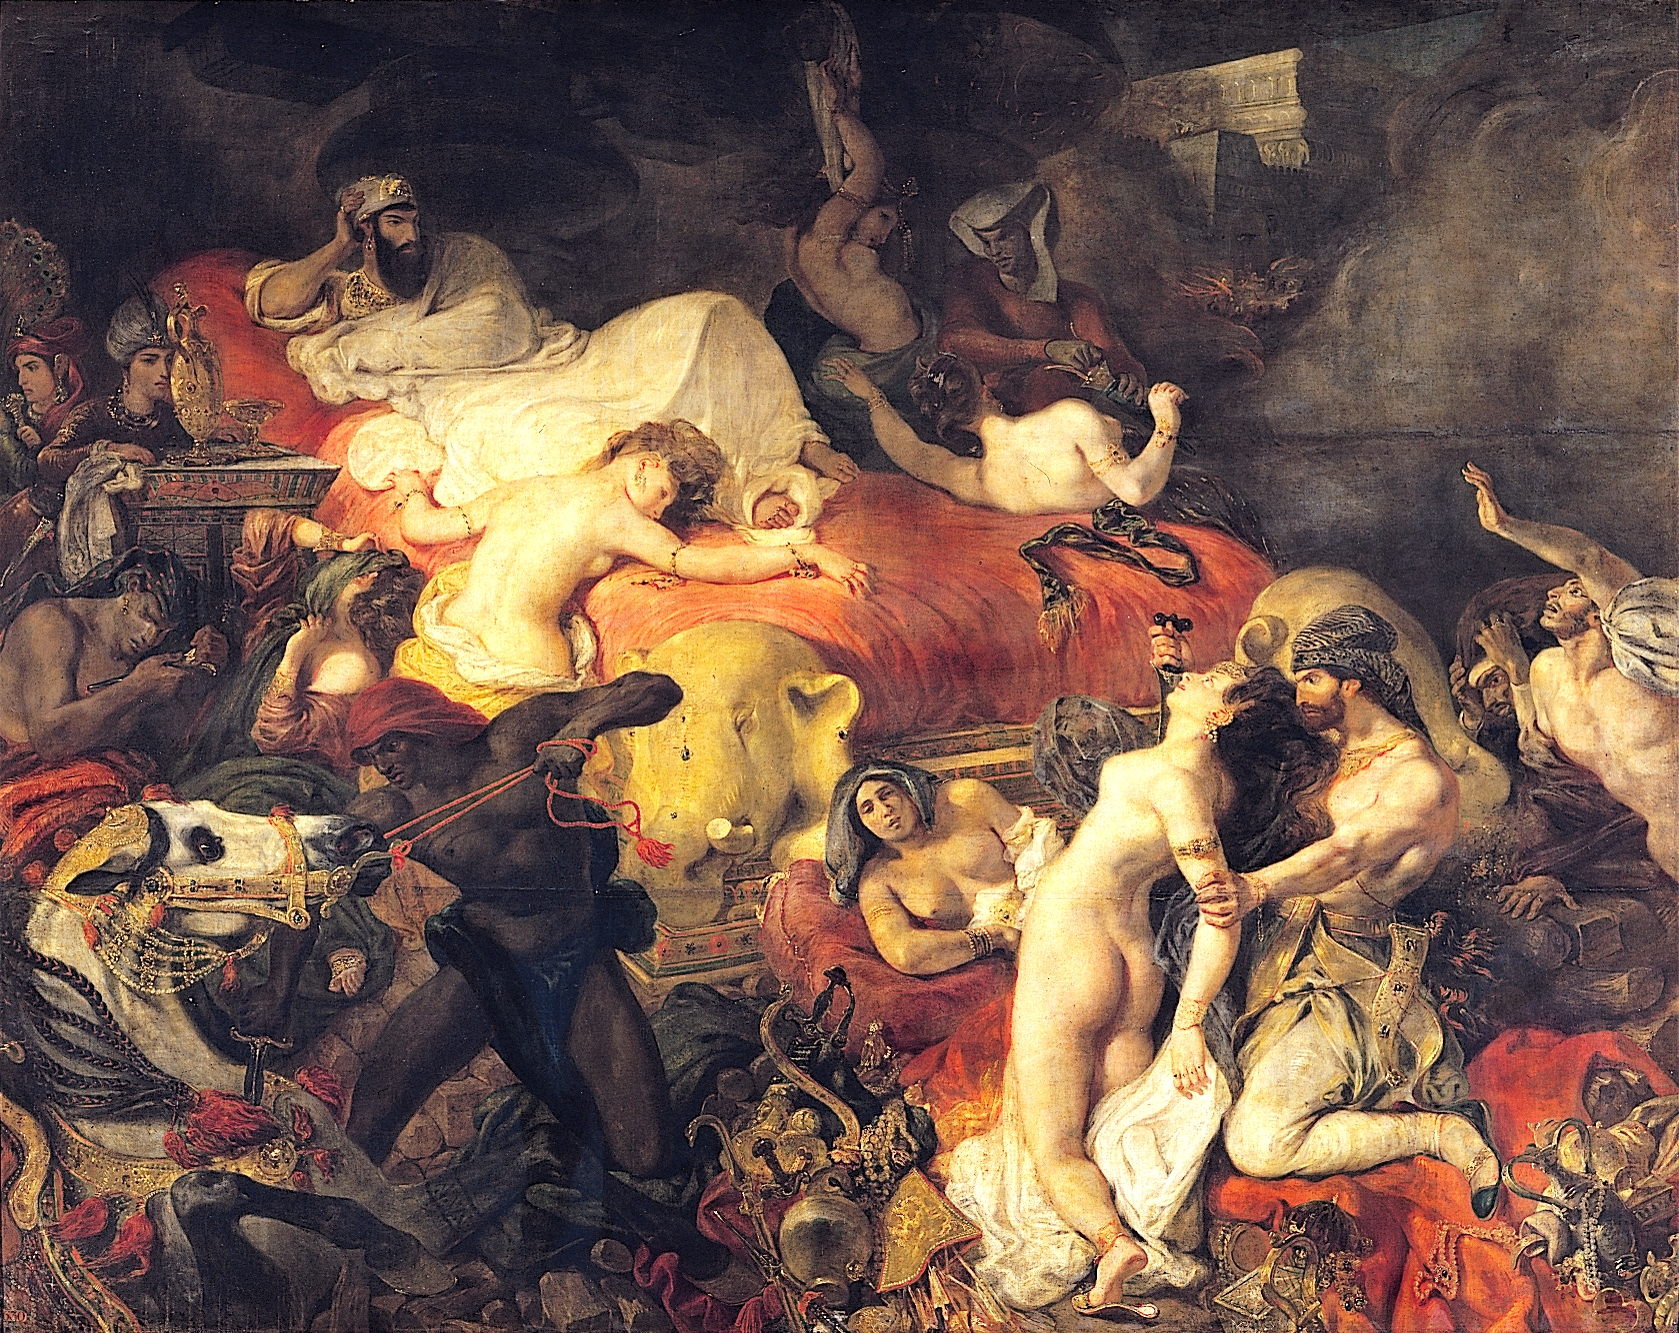 Śmierć Sardanapala by Eugène Delacroix - 1827 - 392 x 496 cm 